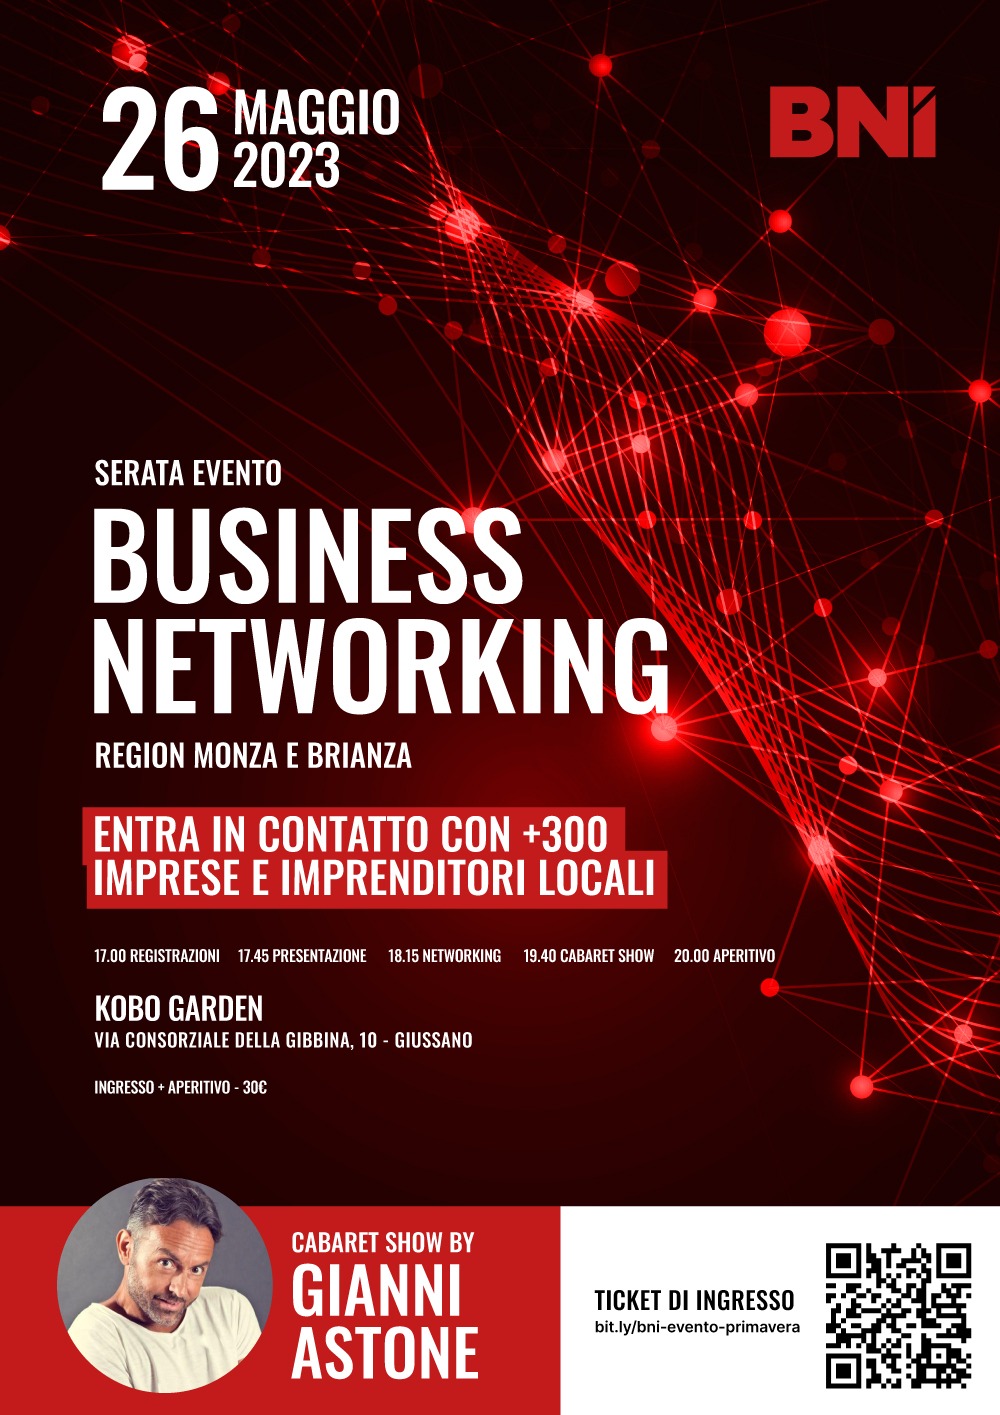 BNI Region Monza Brianza - Evento di networking Primavera 2023